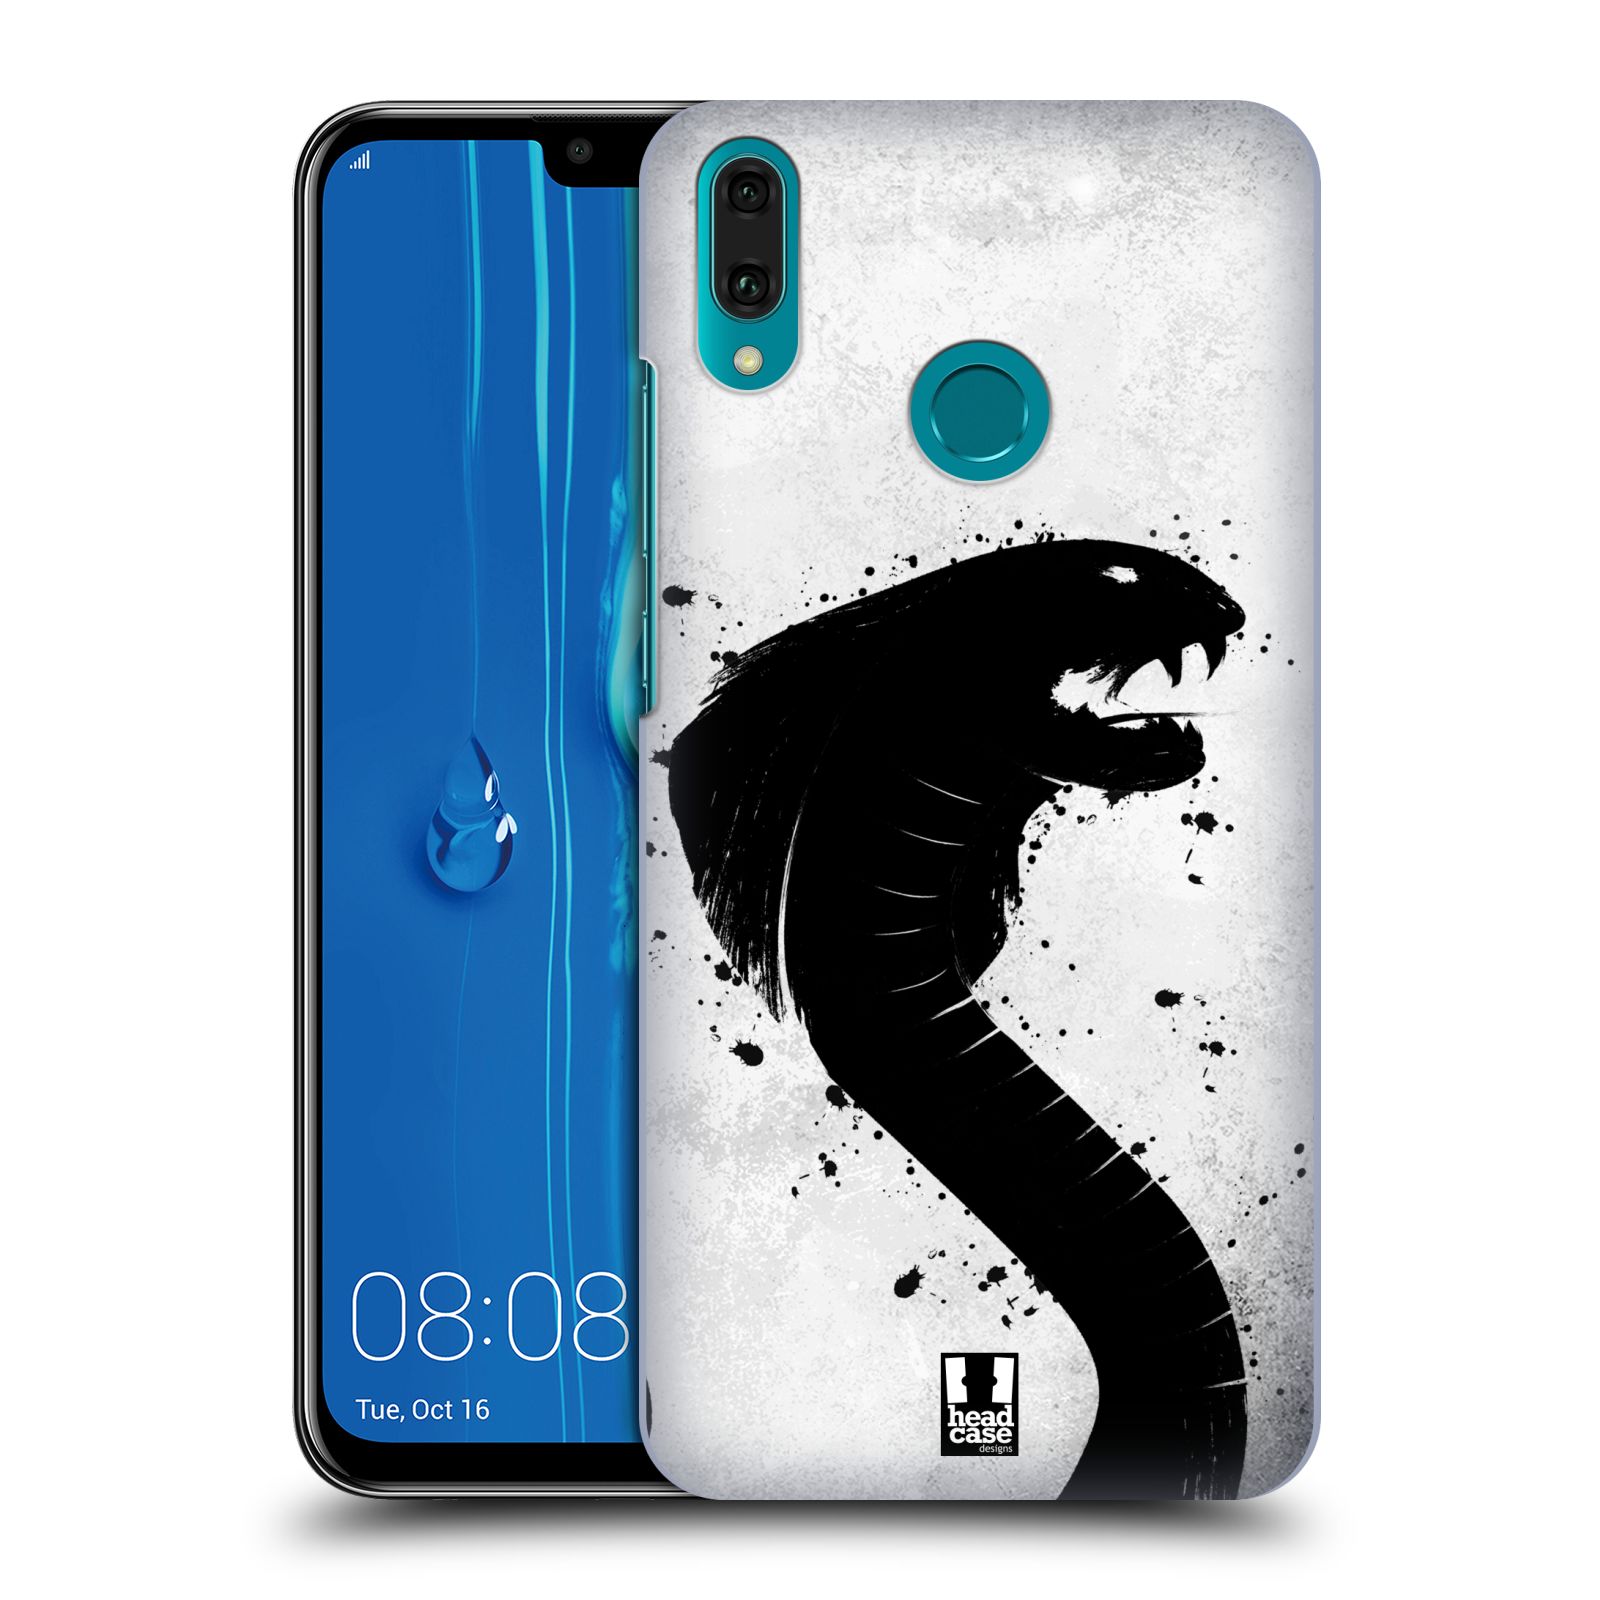 Pouzdro na mobil Huawei Y9 2019 - HEAD CASE - vzor Kresba tuš zvíře had kobra